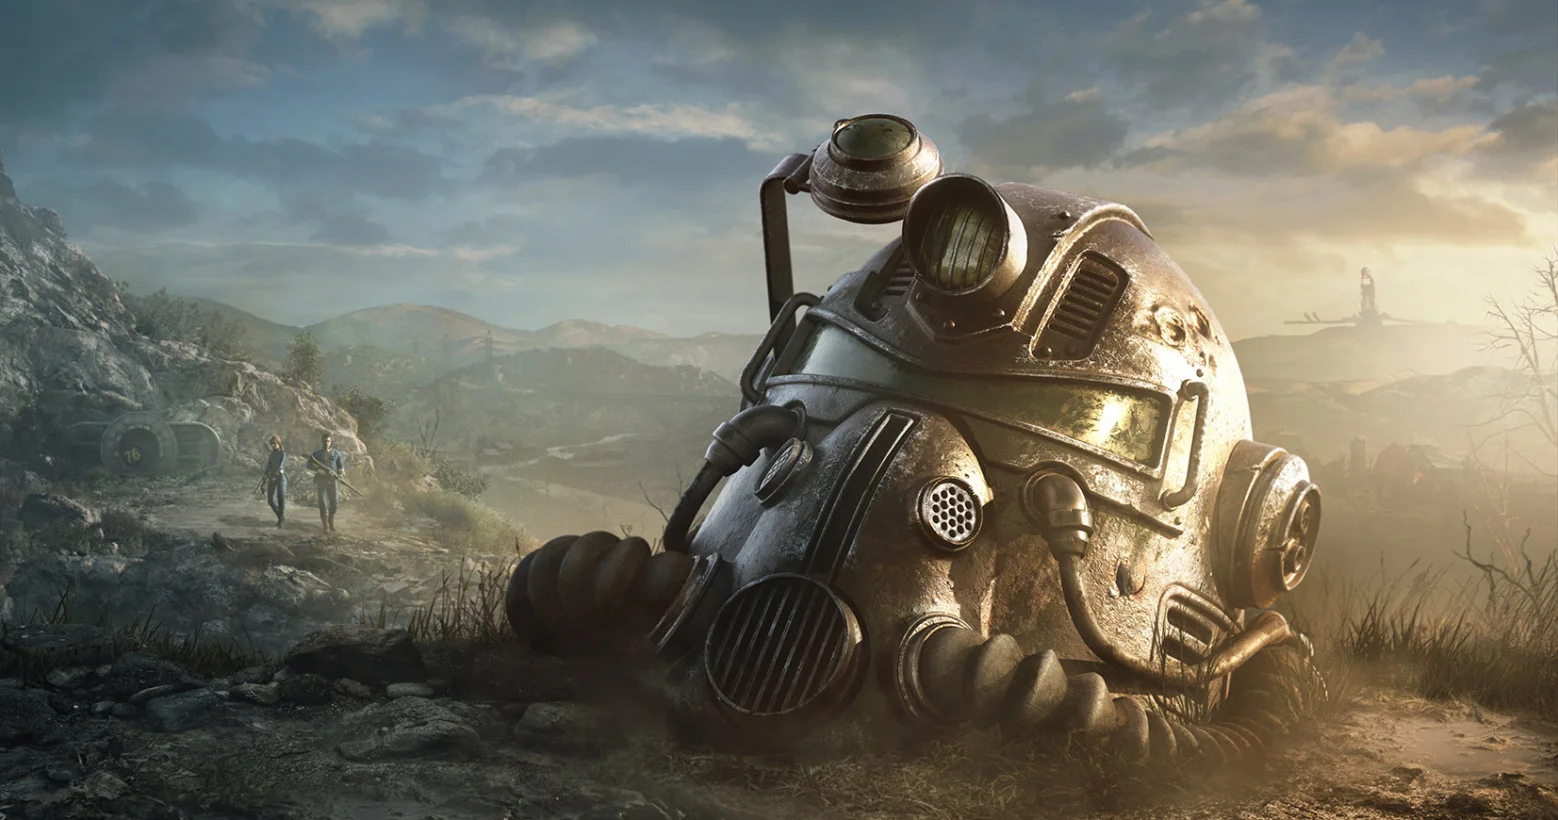 На E3-конференции Bethesda Тодд Говард рассказал о новой части культовой постапокалиптической серии — Fallout 76. Вопреки надеждам поклонников, игра и впрямь оказалась мультиплеерной, причем в ней будет ряд особенностей, которых не было прежде ни в одной Fallout. Давайте разберемся, чего все-таки следует ждать от новой части и почему мультиплеер не будет в ней минусом.